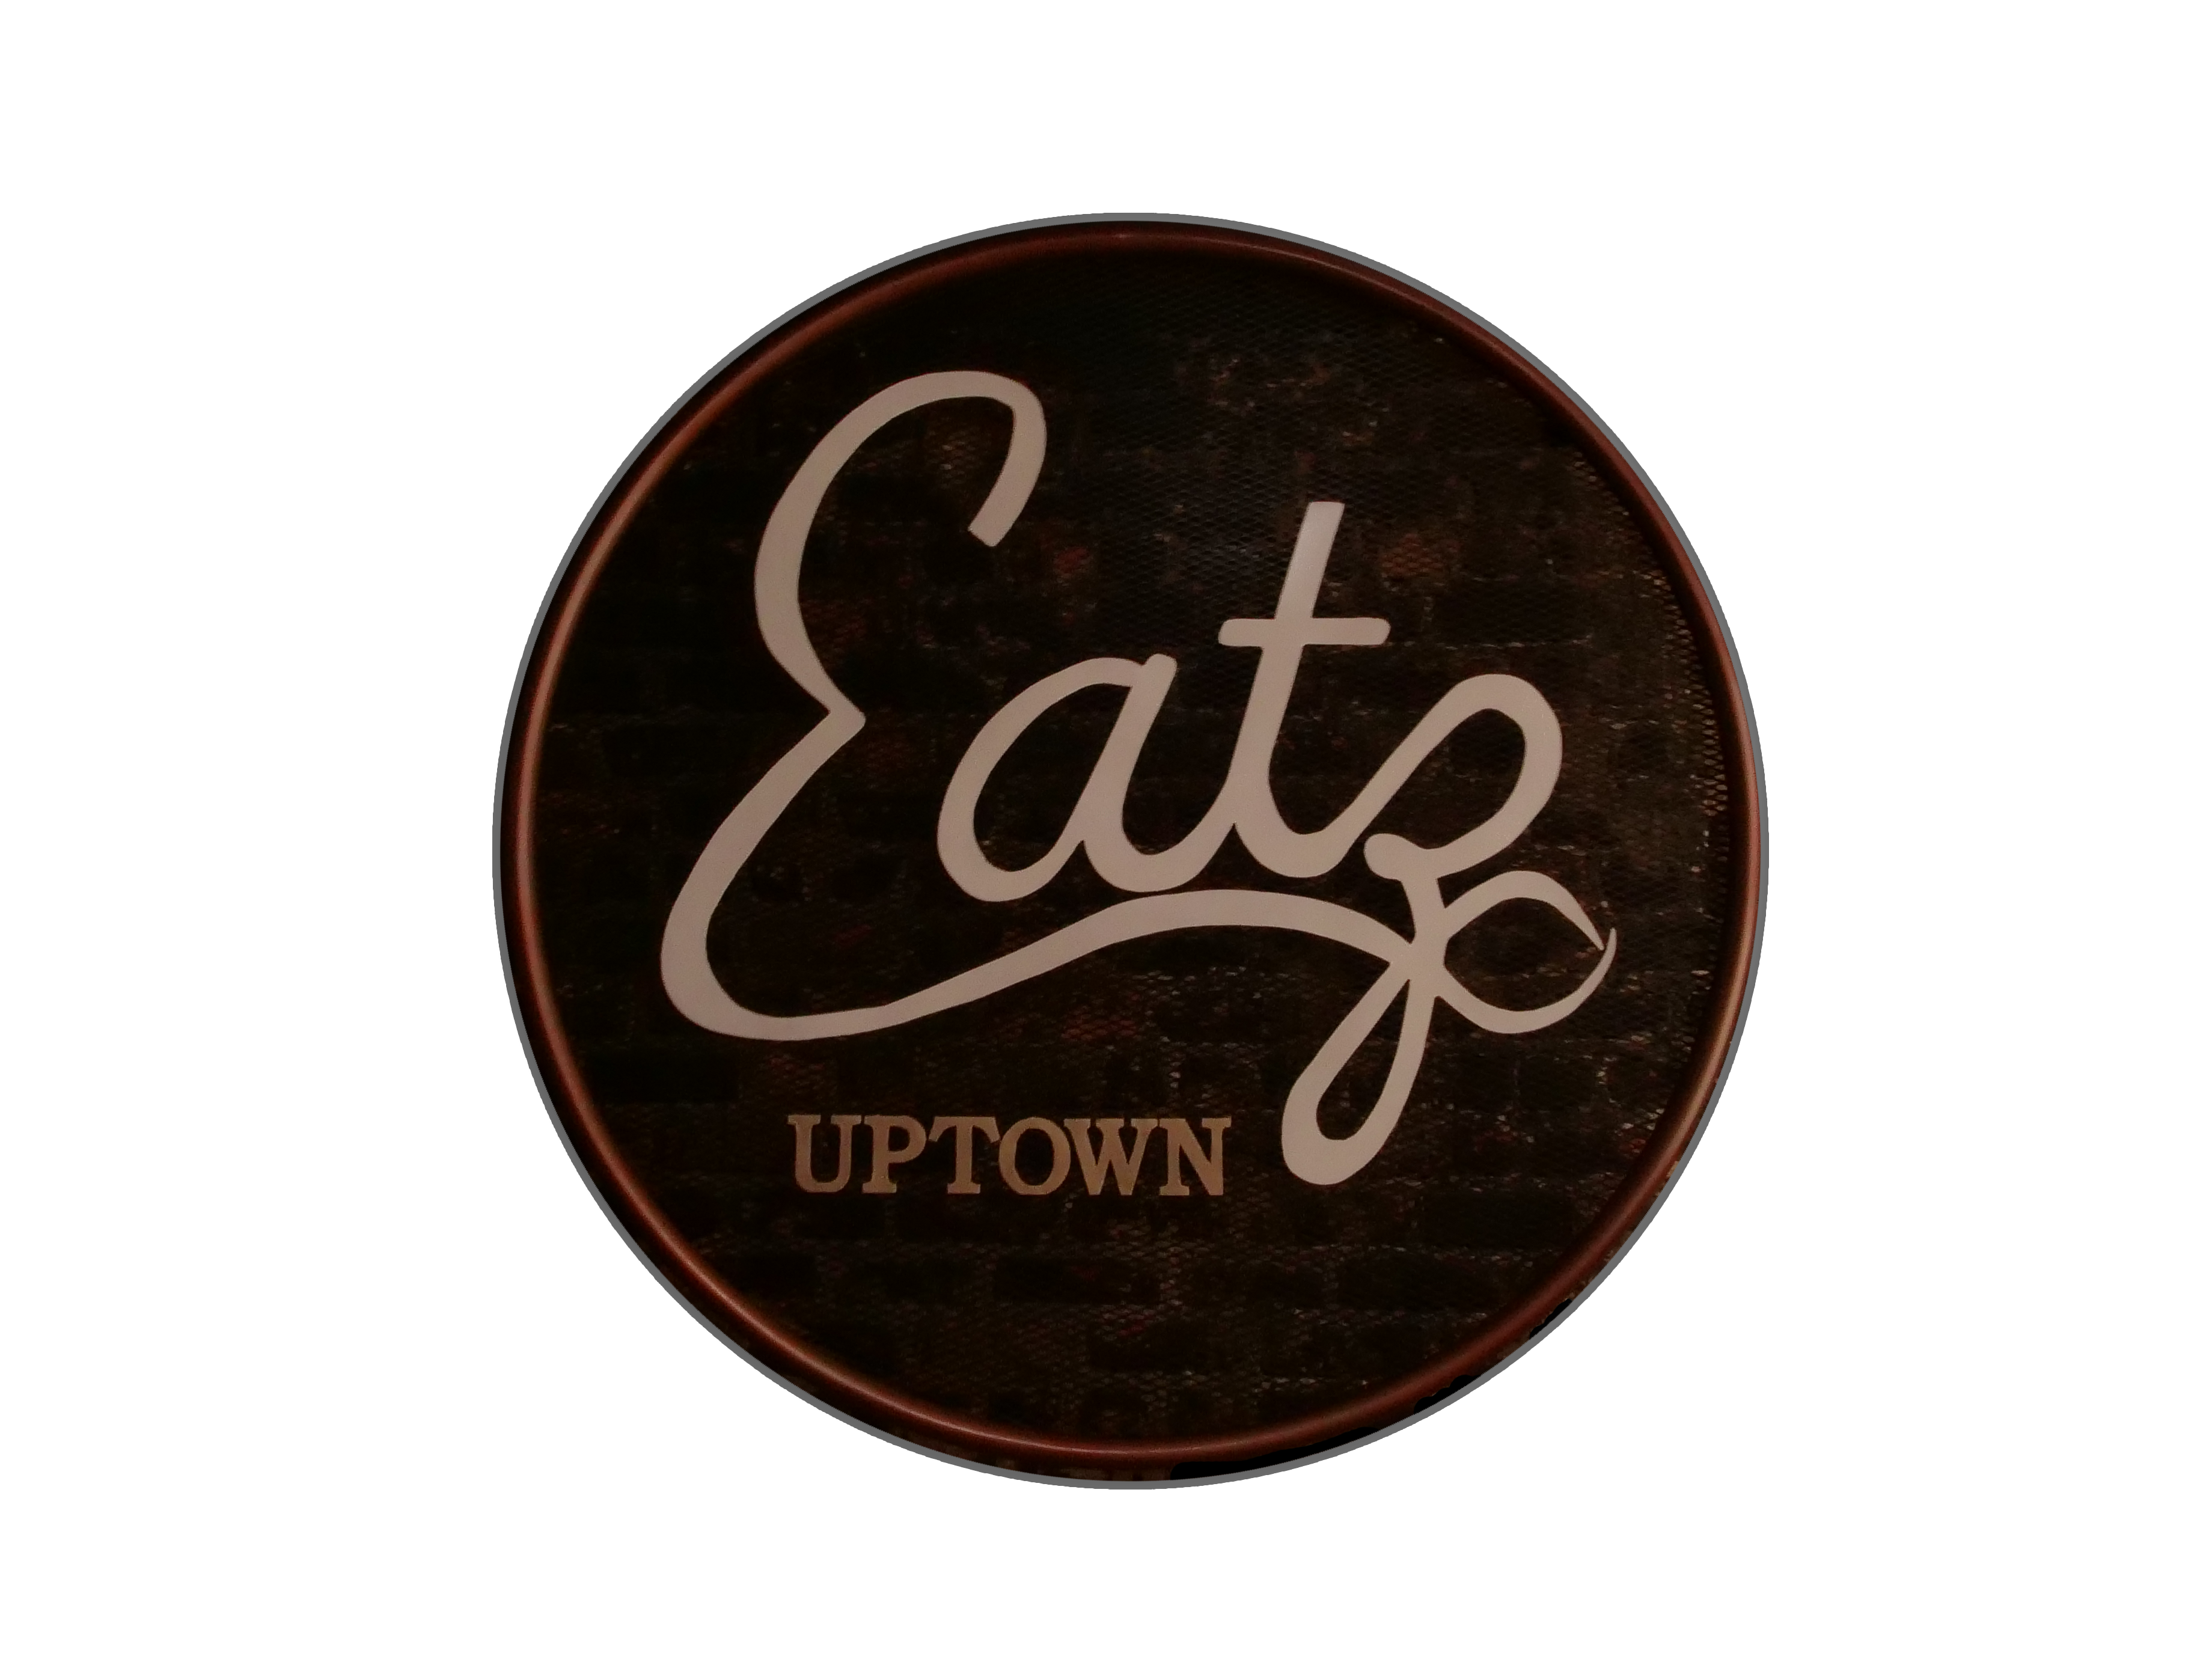 Eatz Uptown